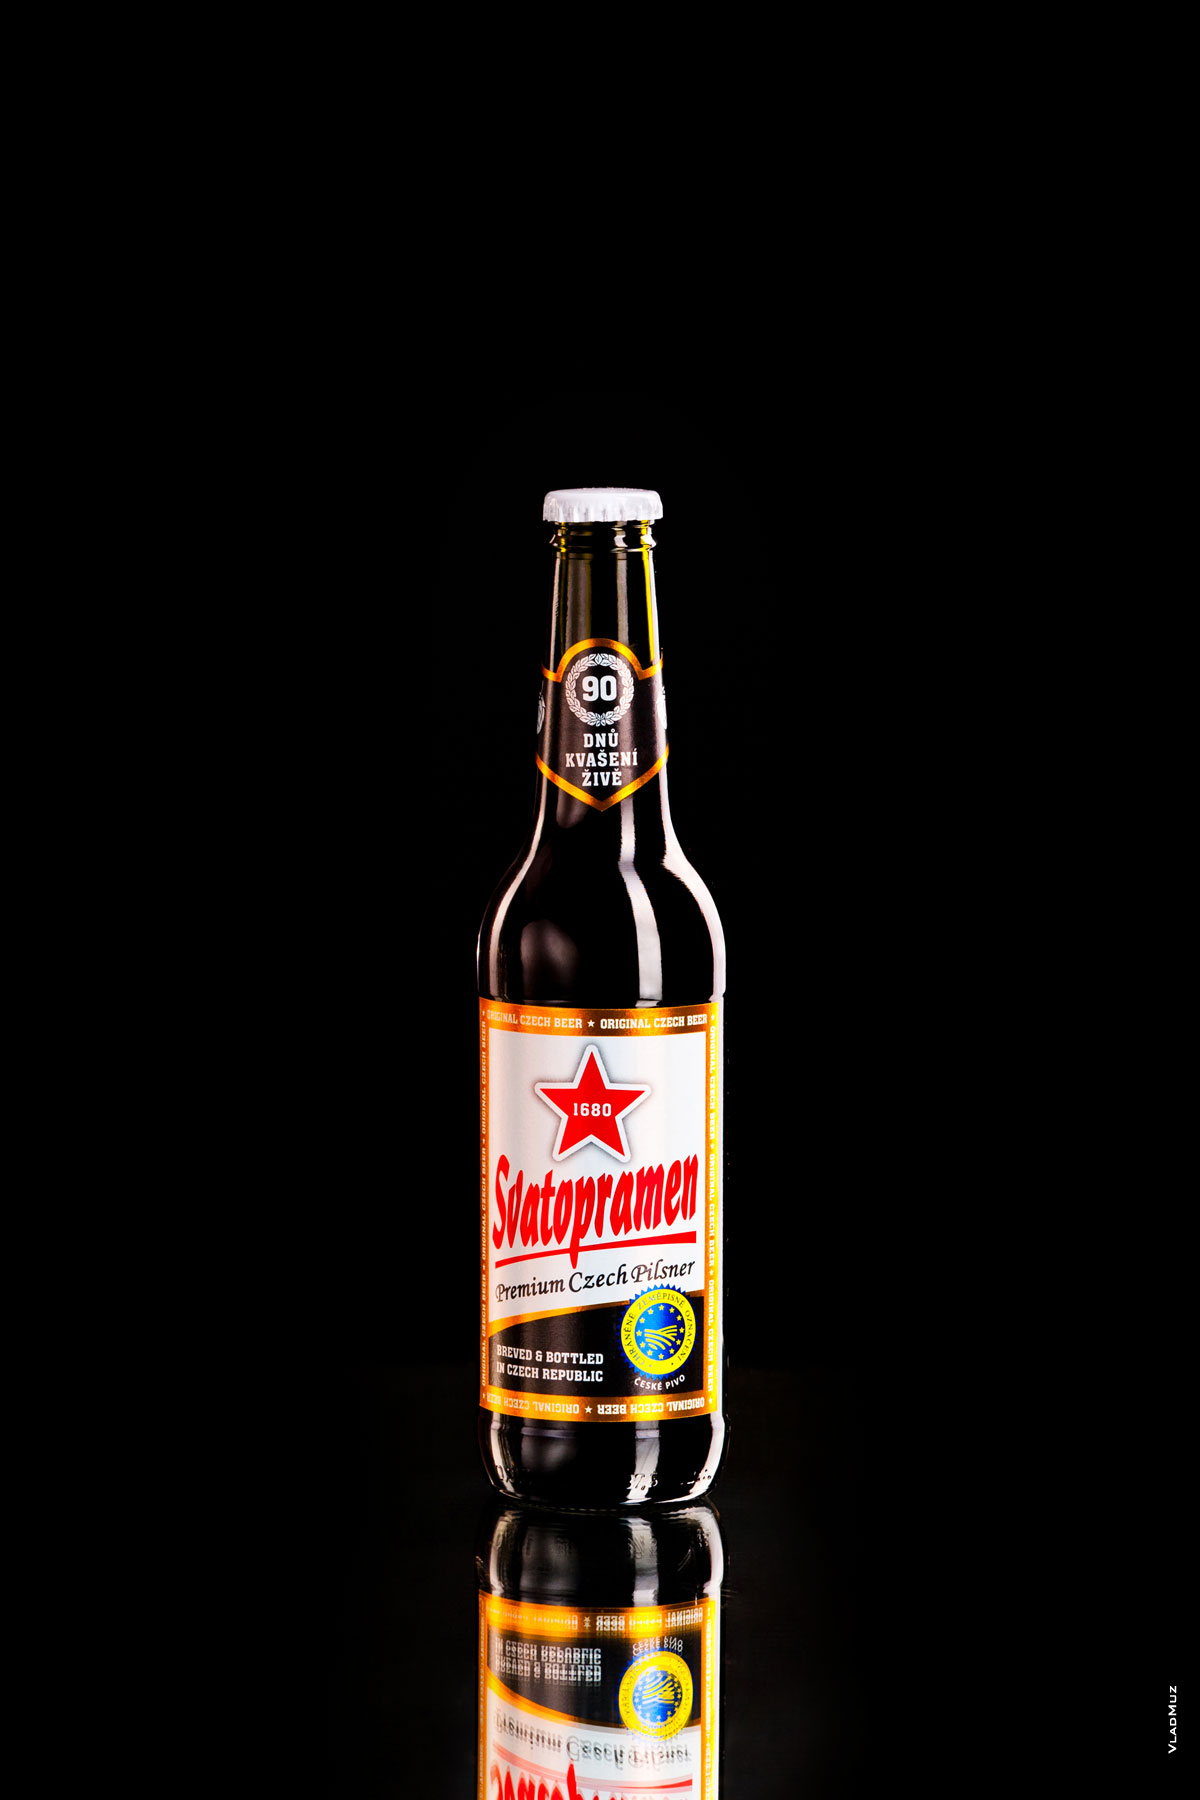 Рекламная фотография бутылки темного пива «Святопрамен» на черном фоне с бликами